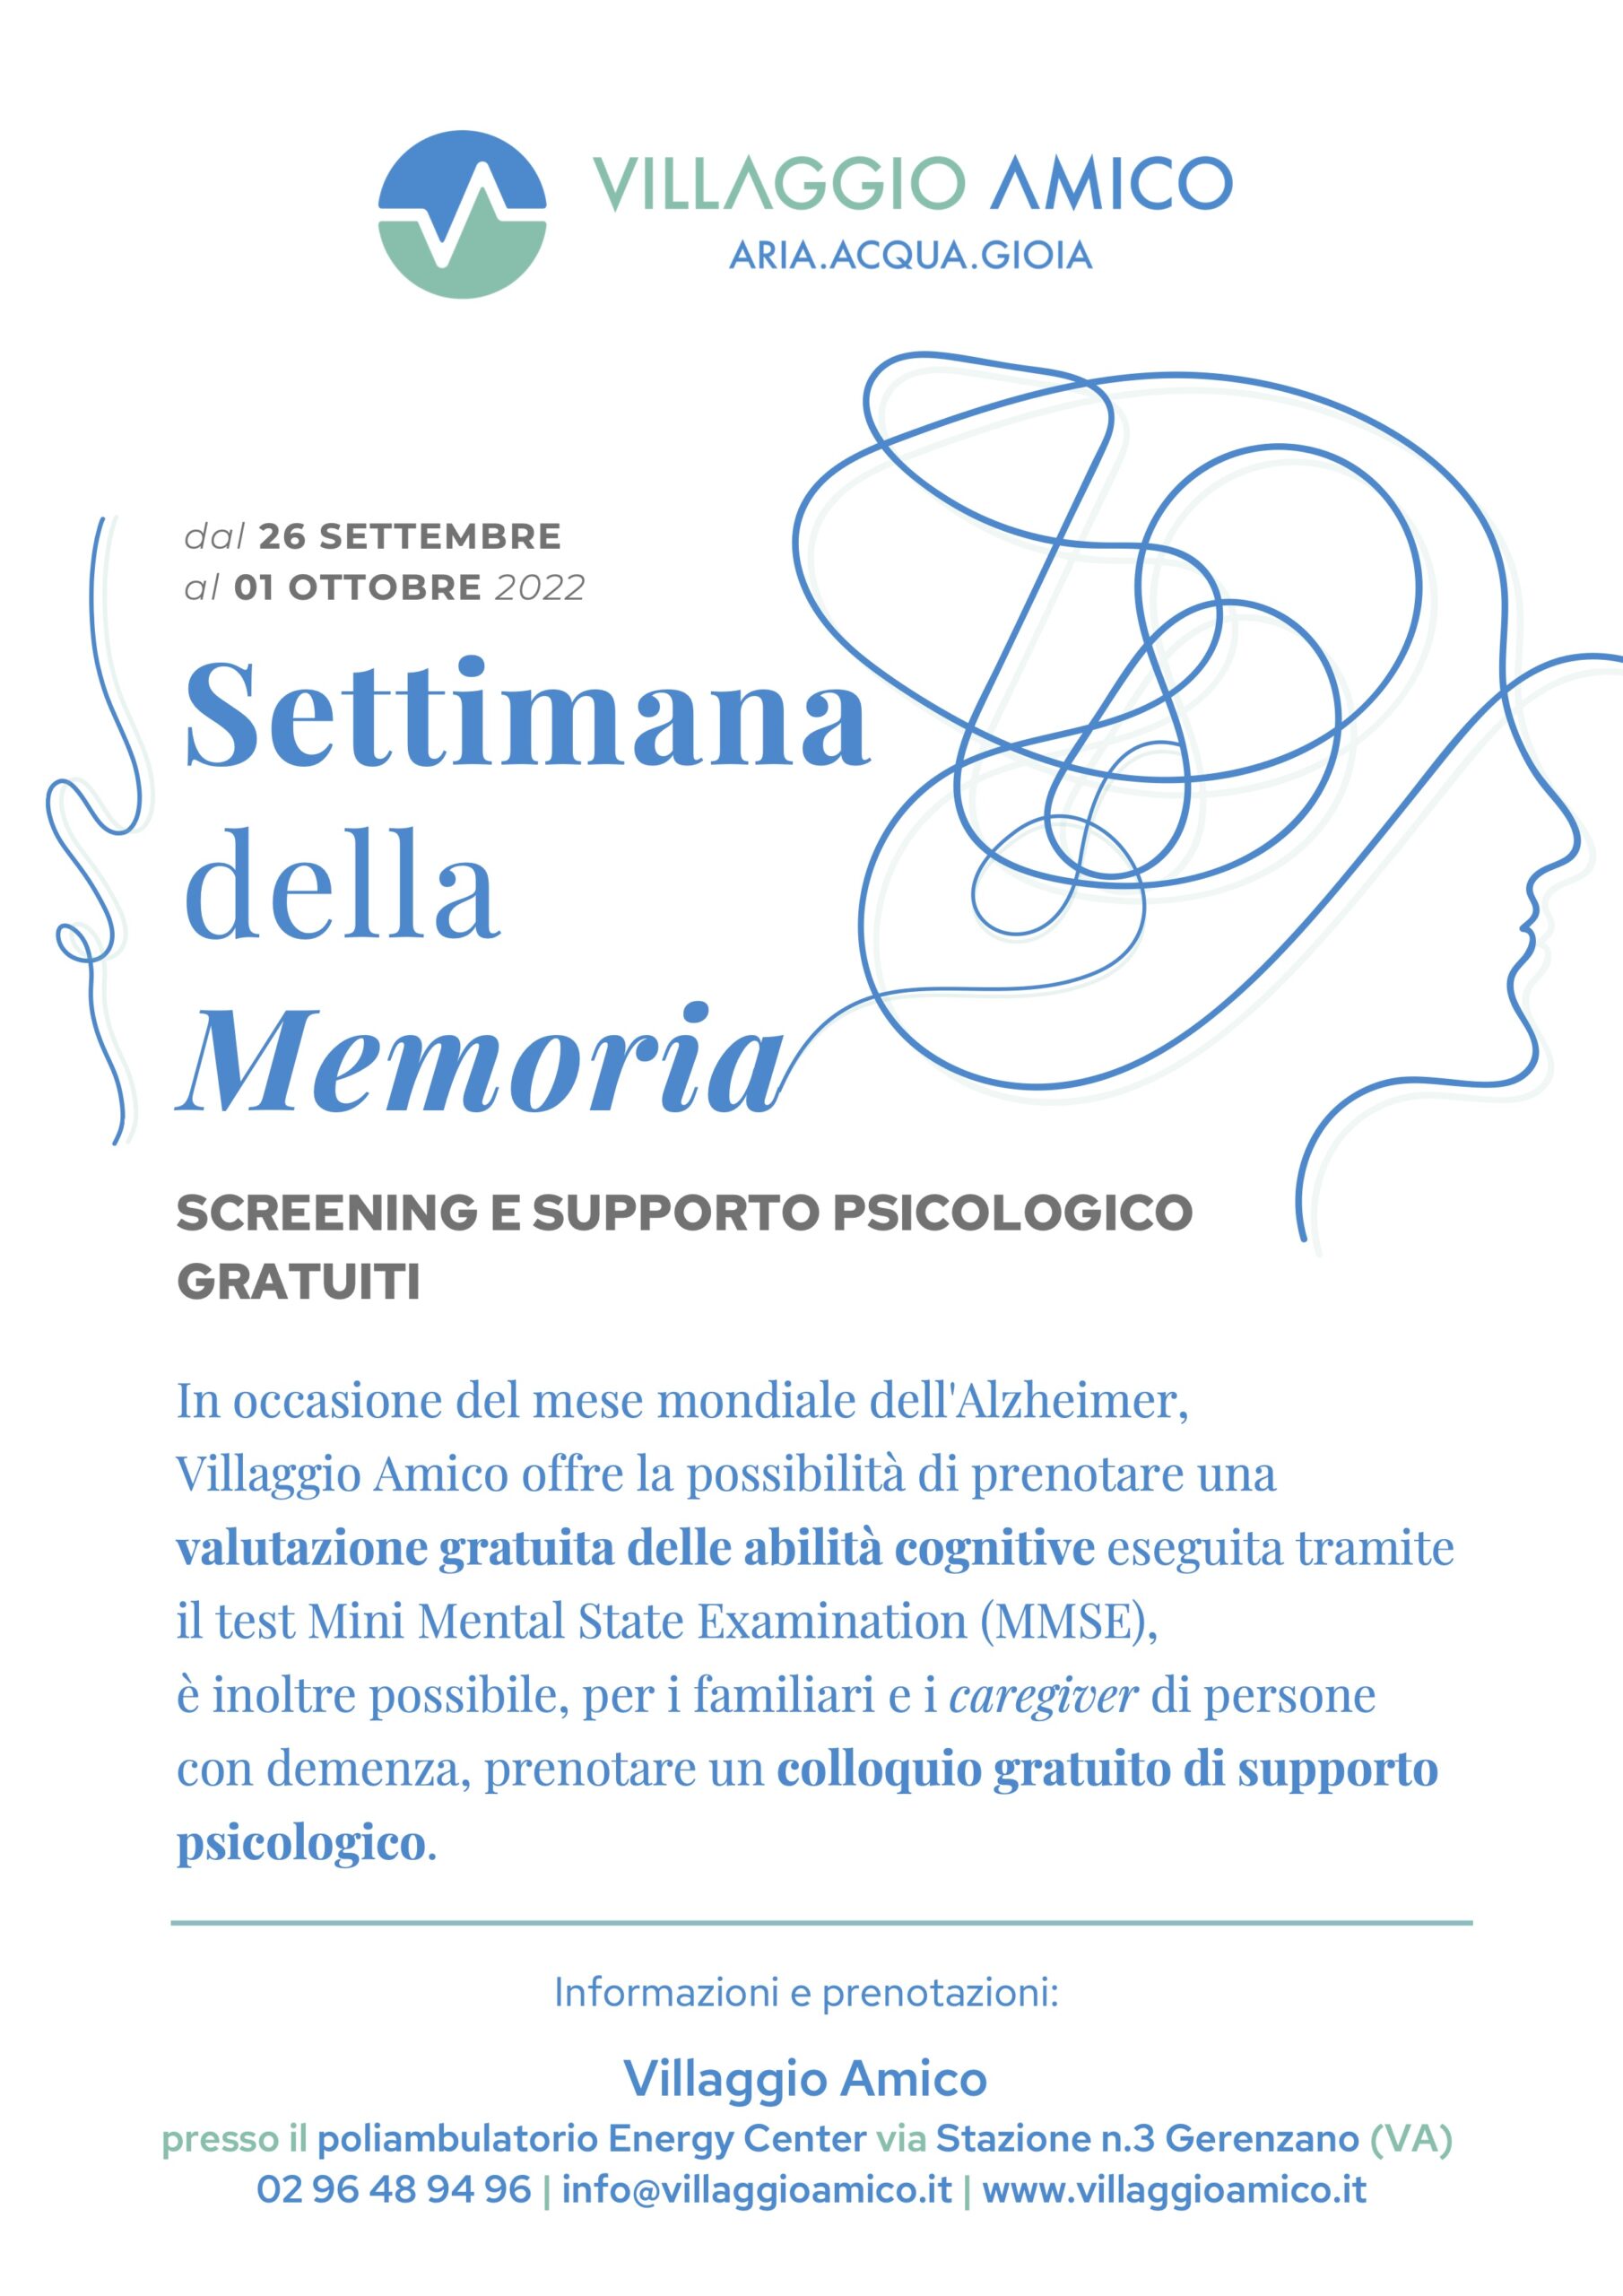 Settembre, mese mondiale dell’Alzheimer: a Villaggio Amico screening e supporto psicologico gratuiti